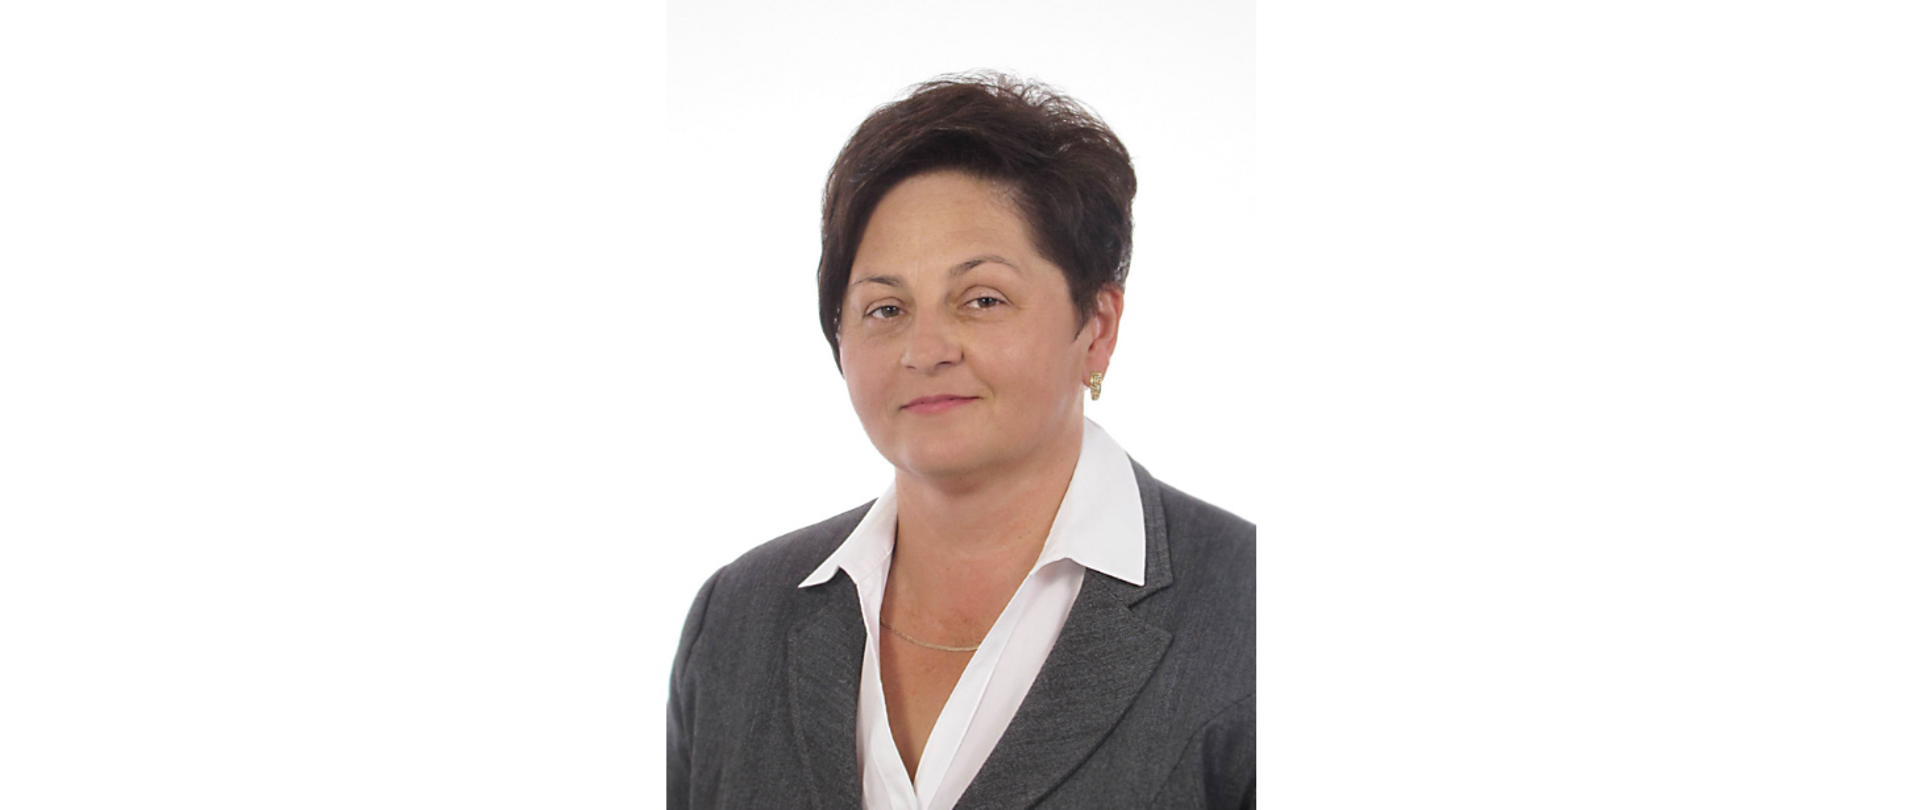 Przewodnicząca Rady Gminy w Stryszowie - Magdalena Adamczyk